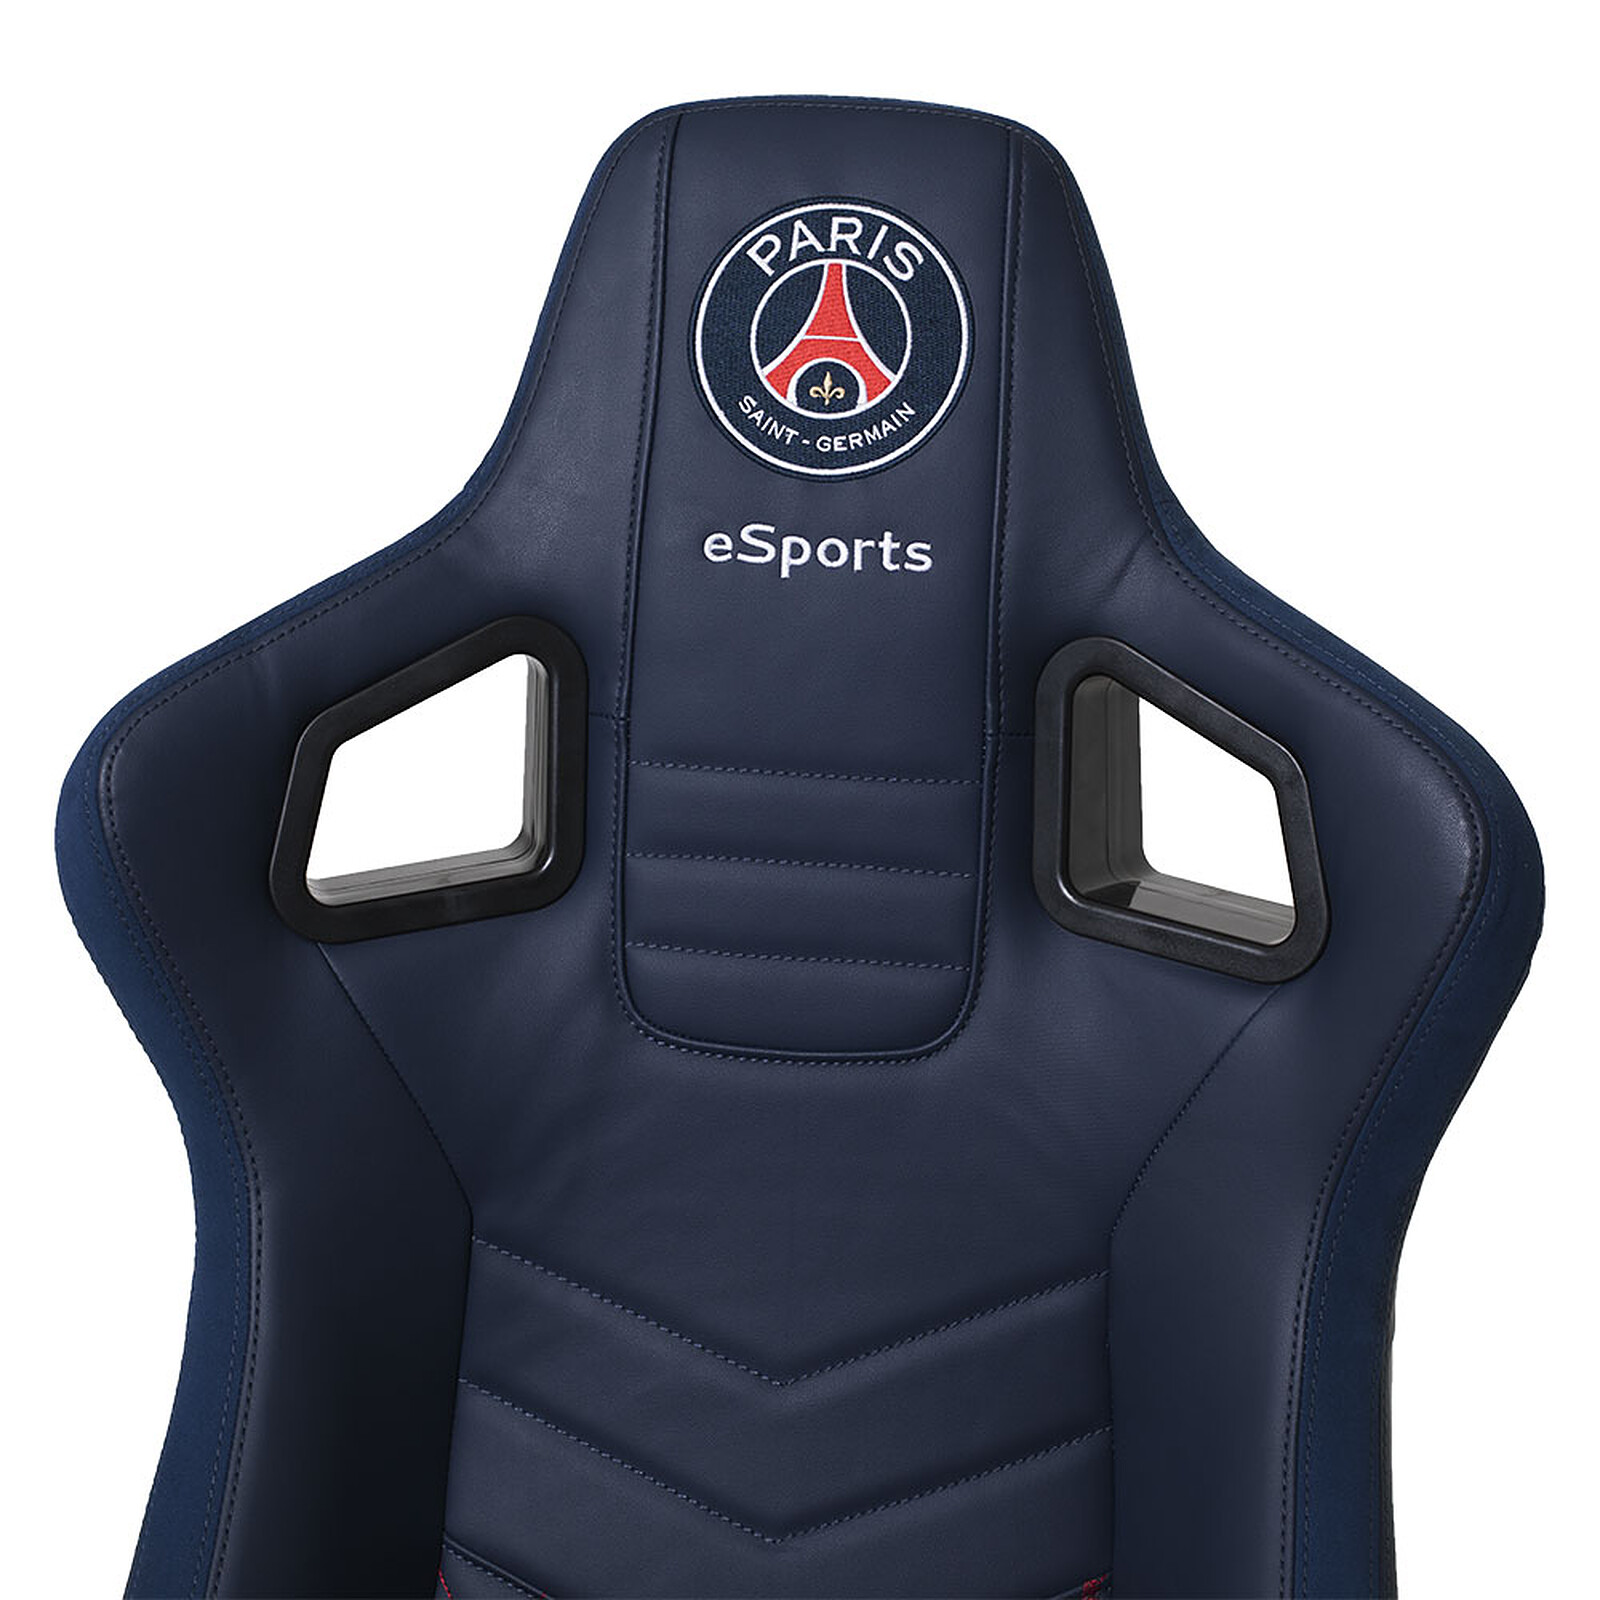 PSG eSports fauteuil pro gamer - Fauteuil gamer - Garantie 3 ans